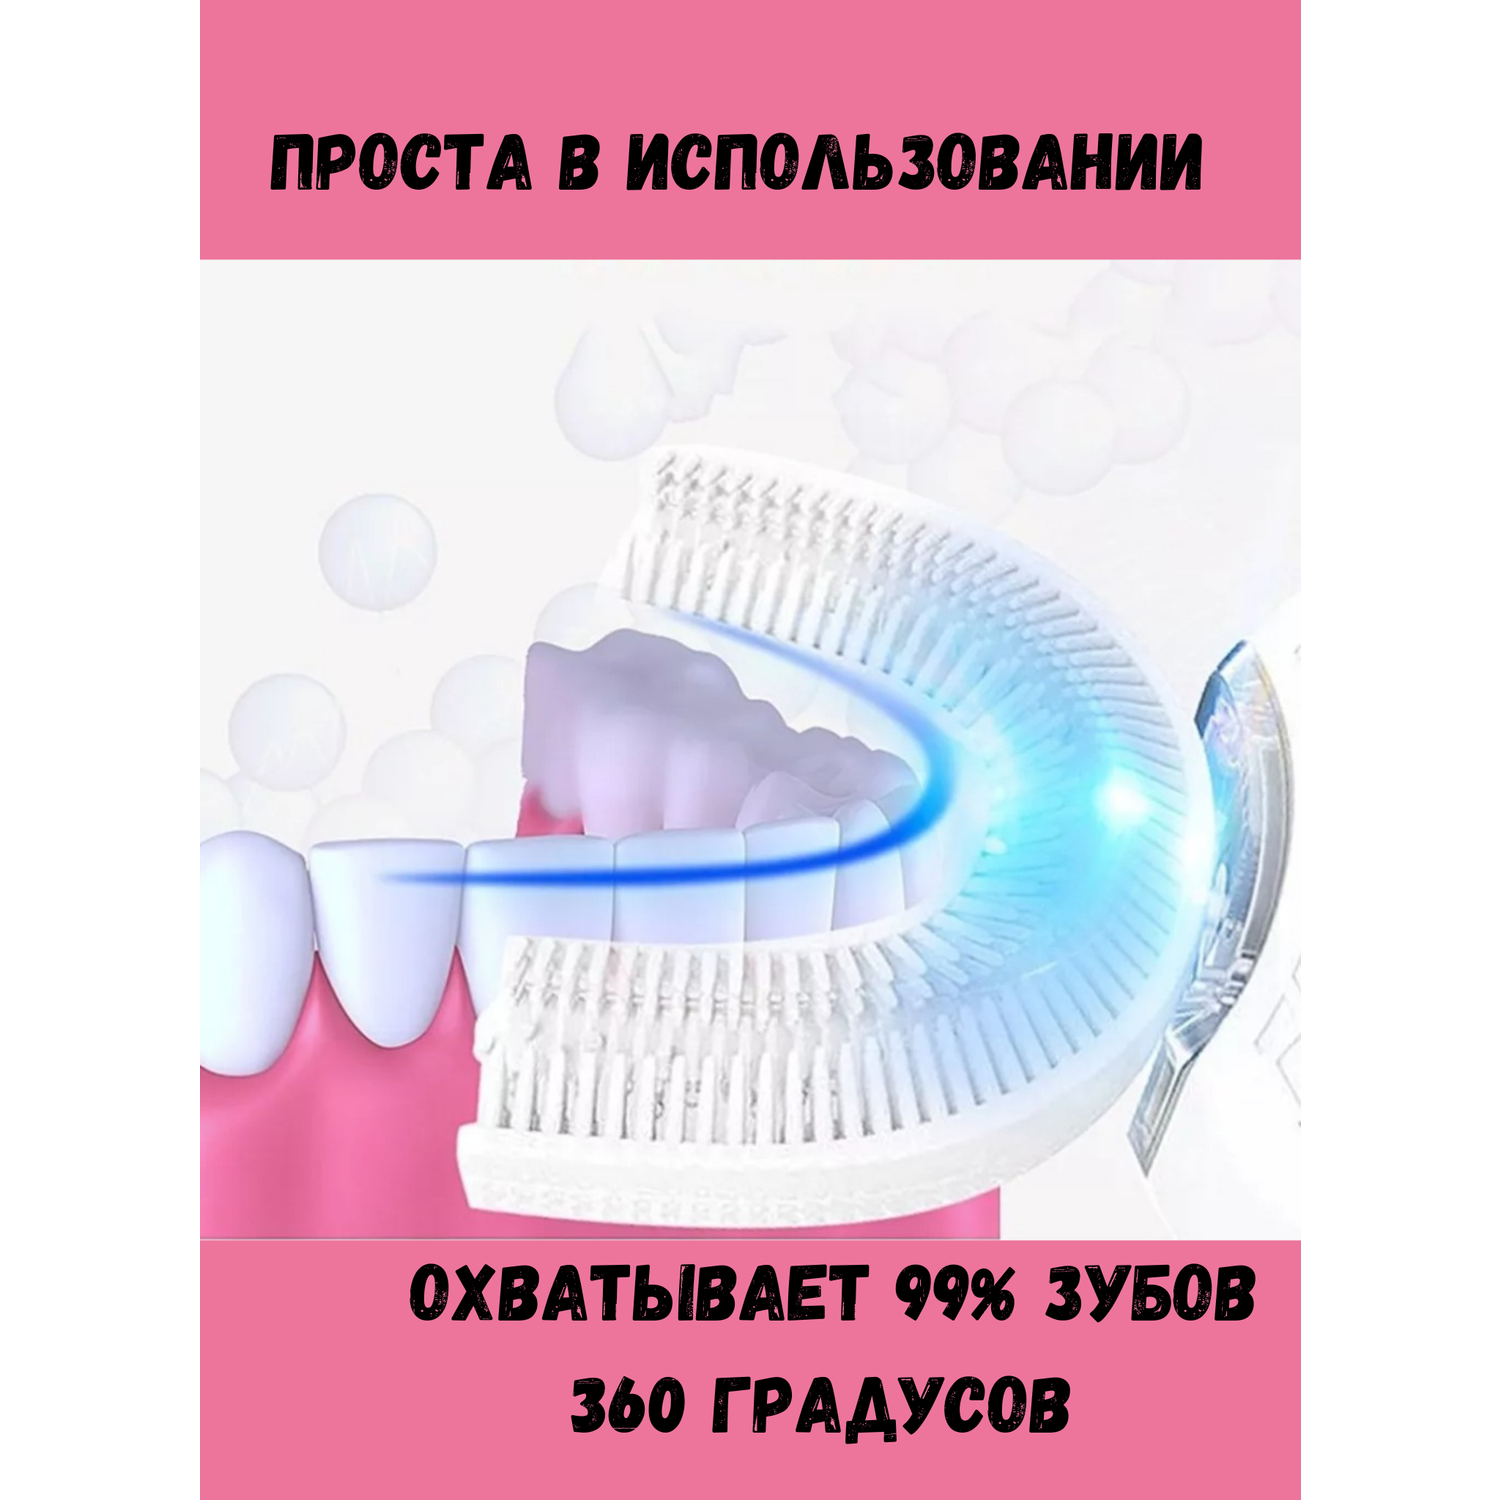 Зубная щетка GK u-образная силиконовая синяя 2 шт - фото 3